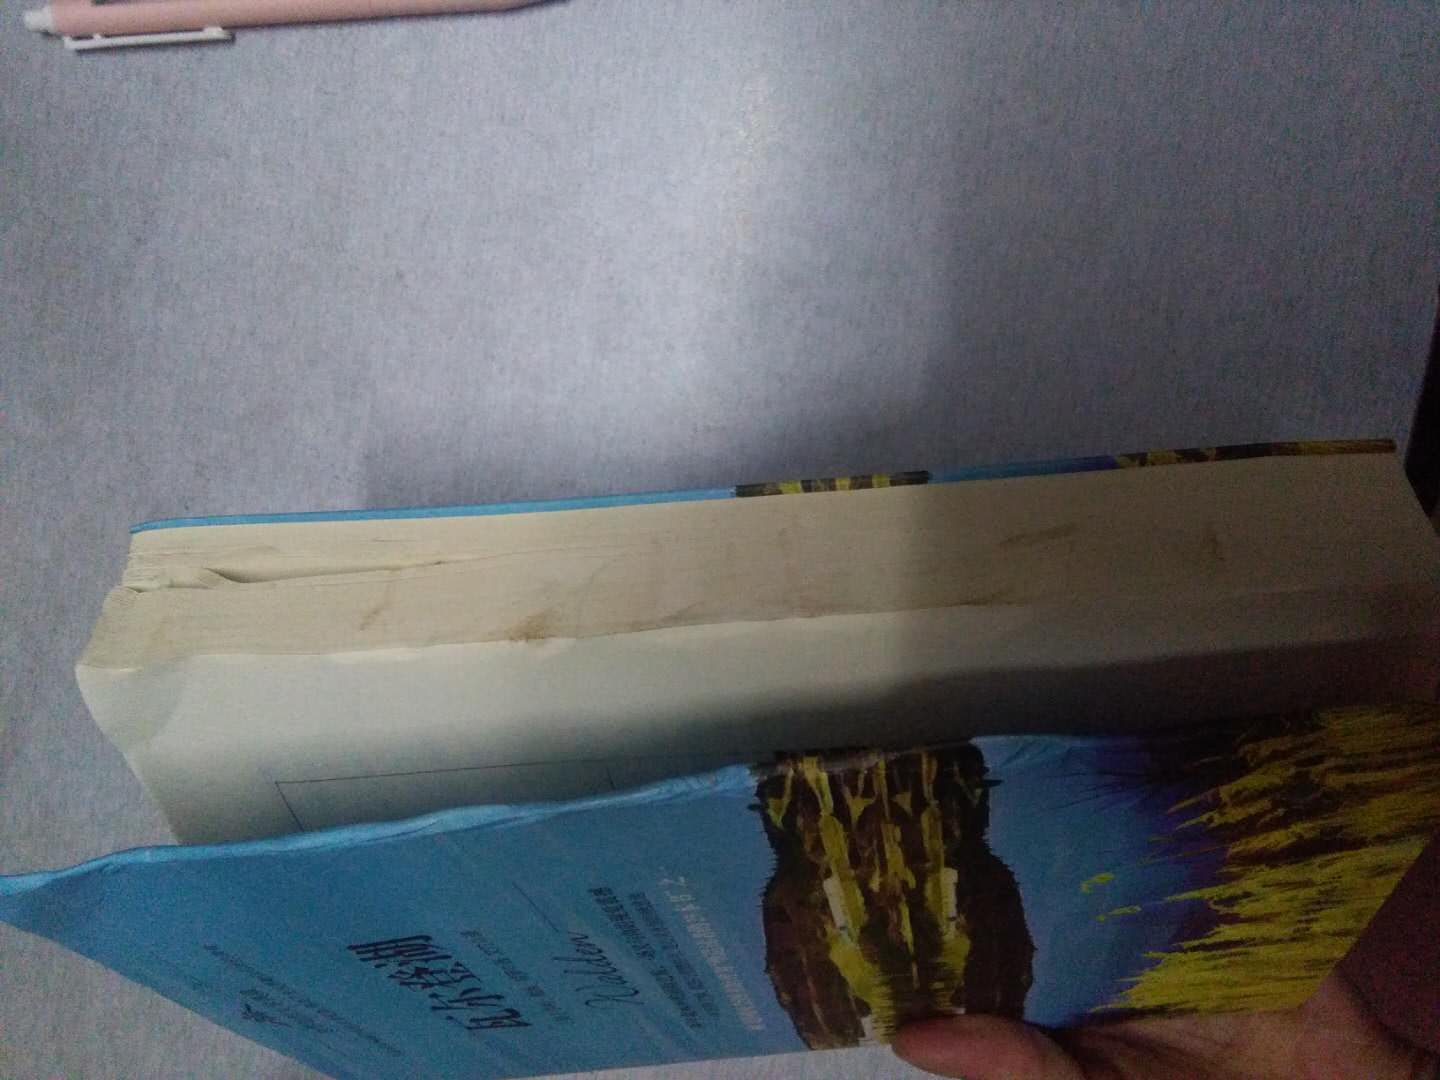 打开心情瞬间不好。。。。包装纸裂了，里面的书都皱起来了